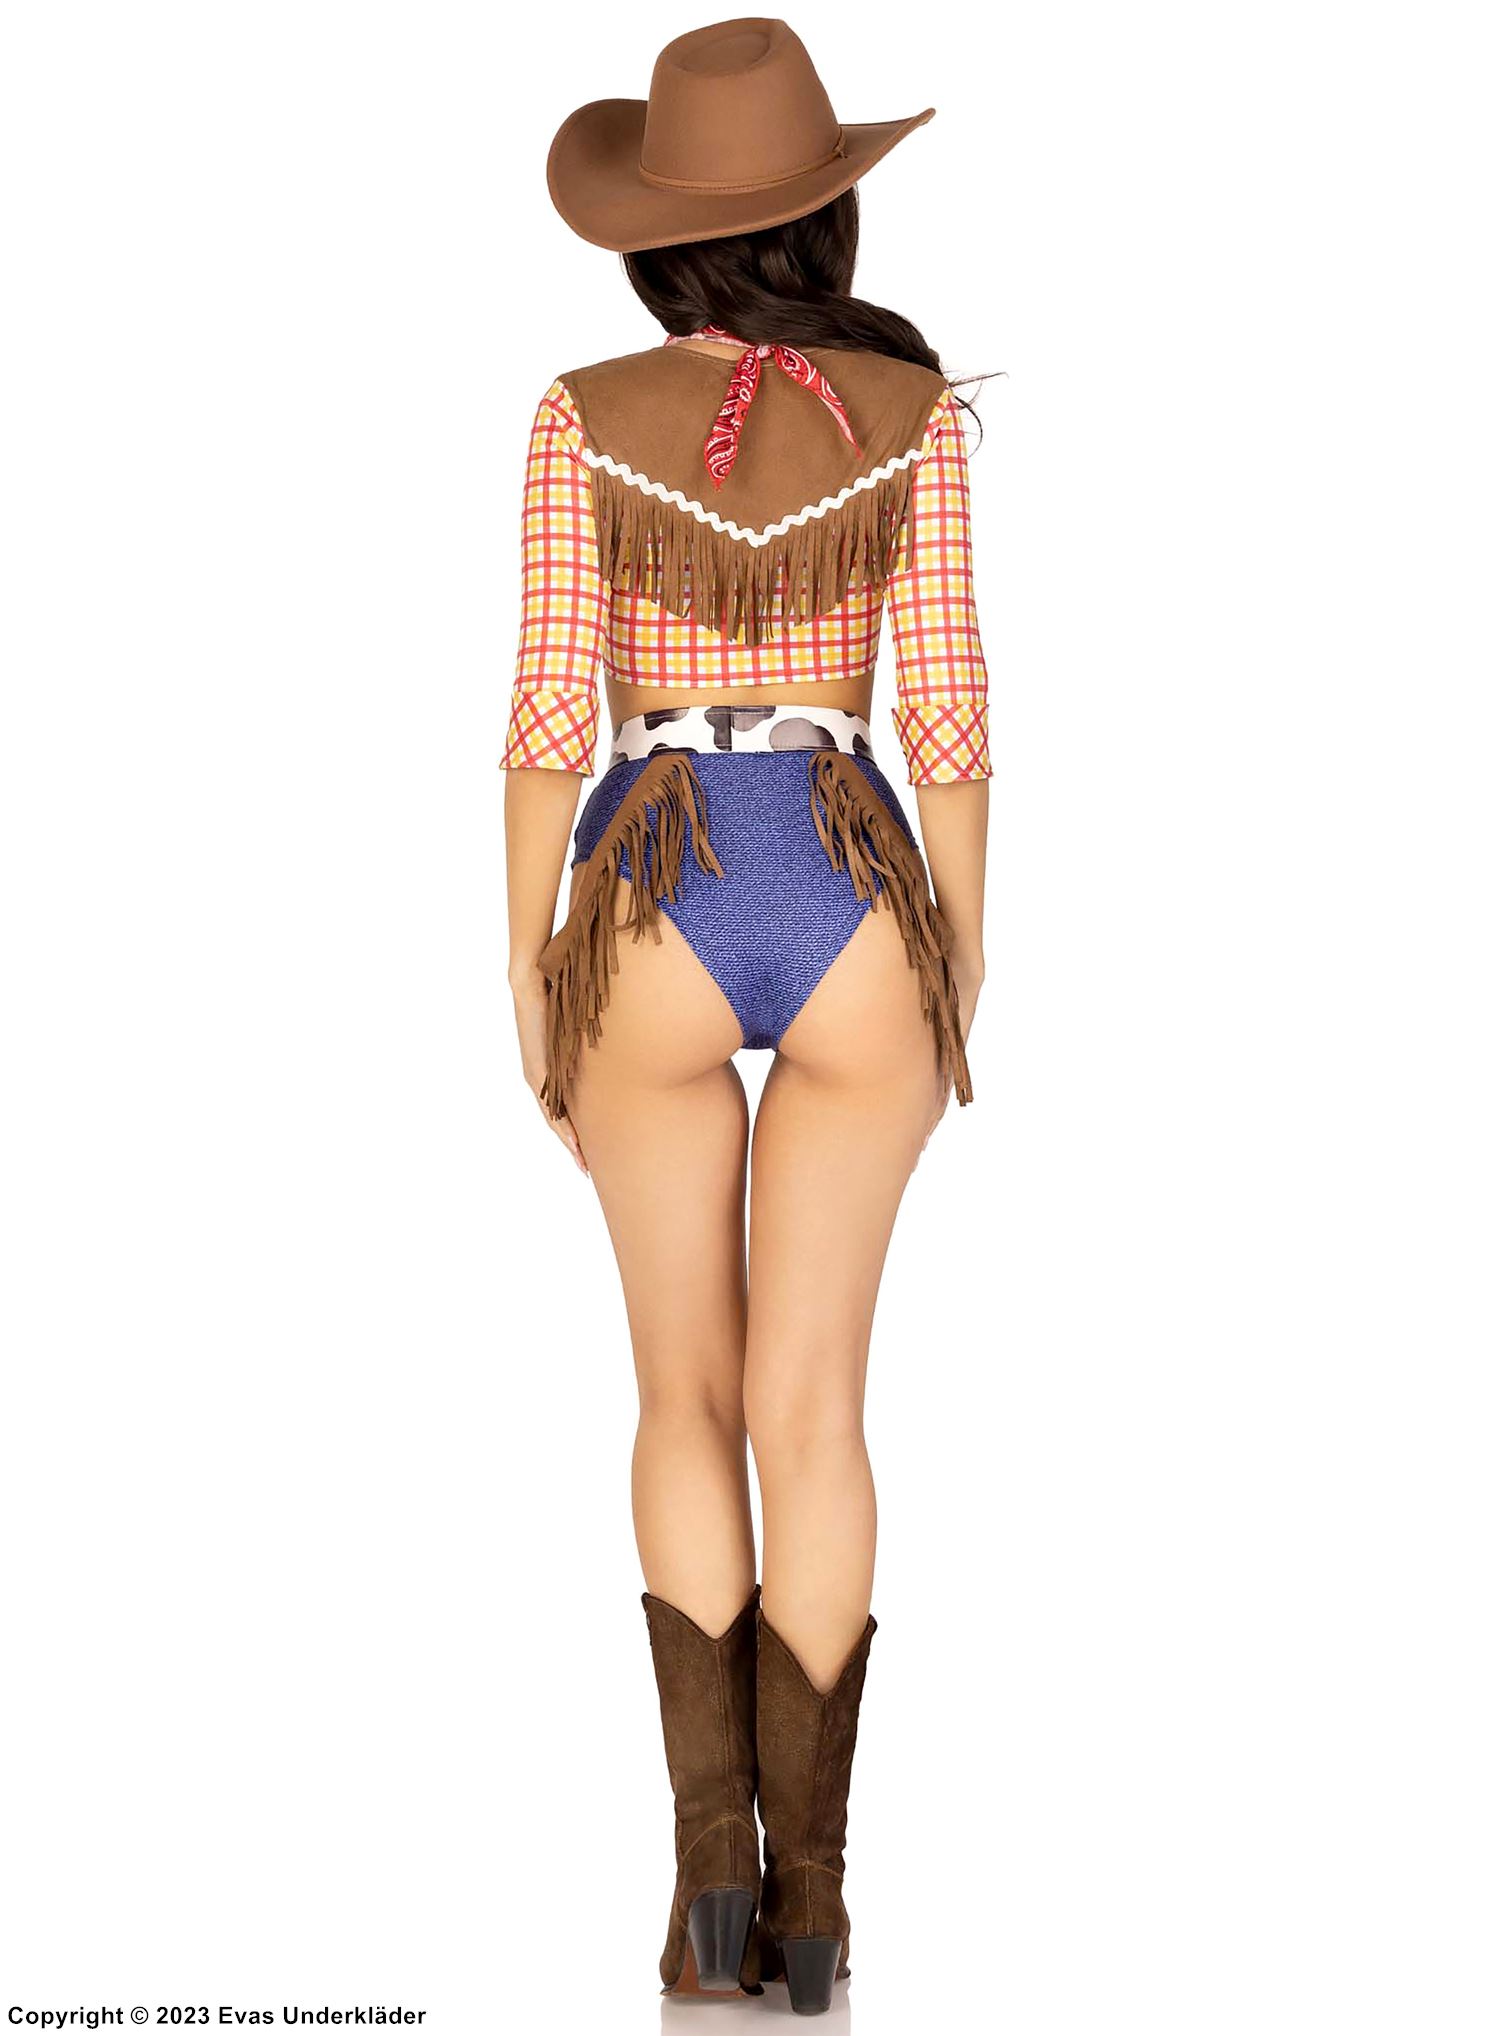 Woody fra Toy Story, maskeradekostyme med topp og shorts, frynser, ermer med 3/4-lengde, skotskrutet mønster